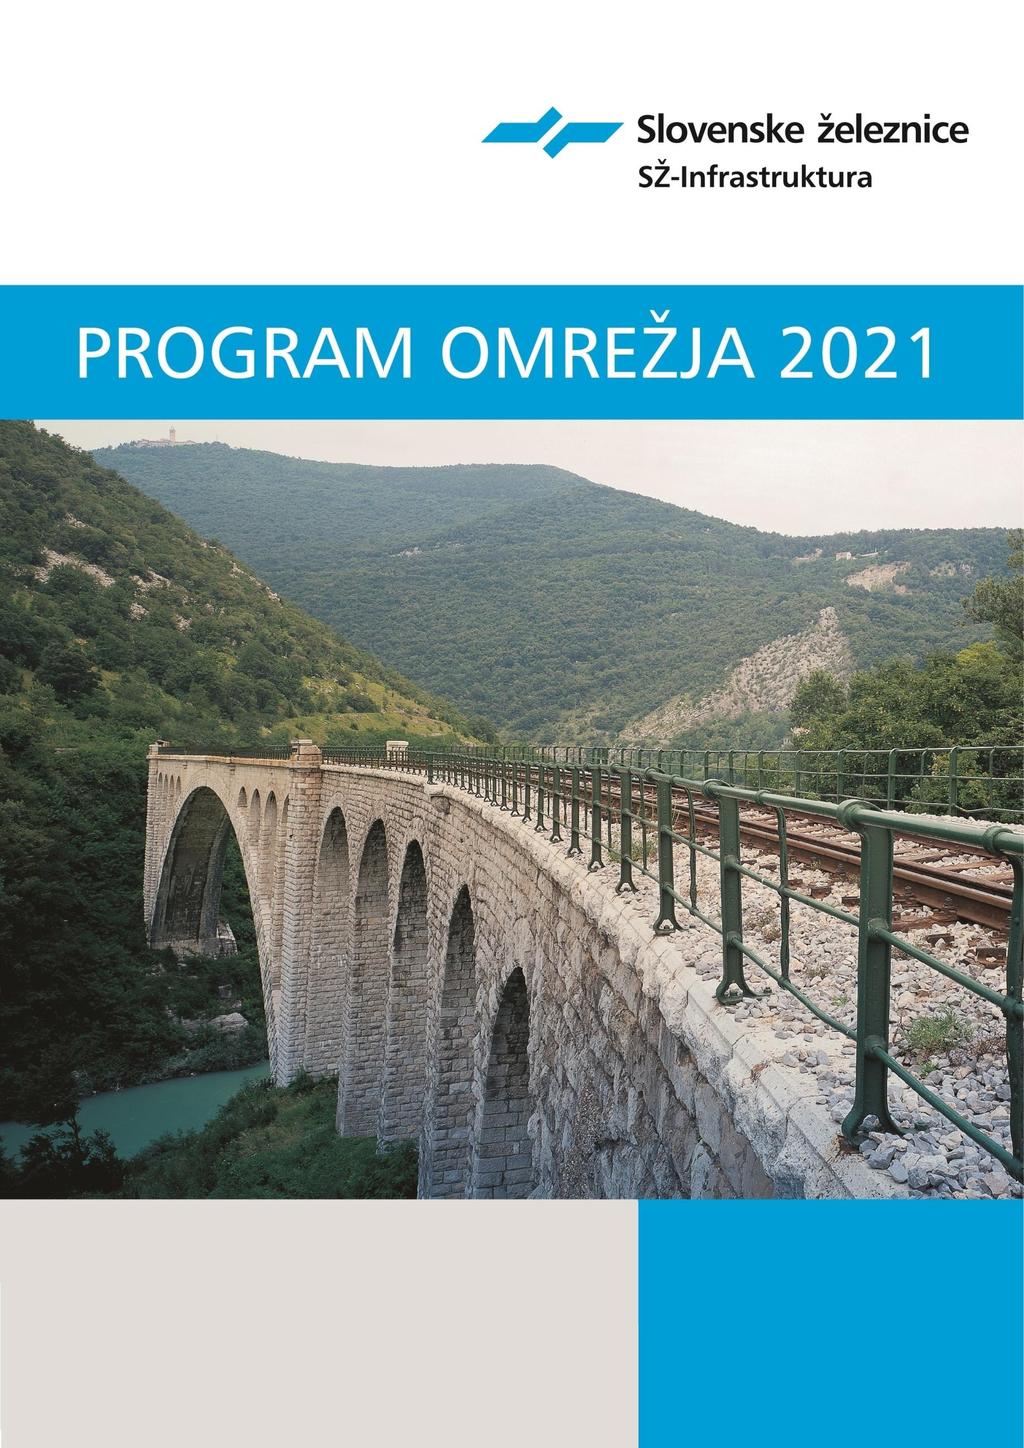 Slovenske železnice Infrastruktura, d.o.o. Verzija 1.